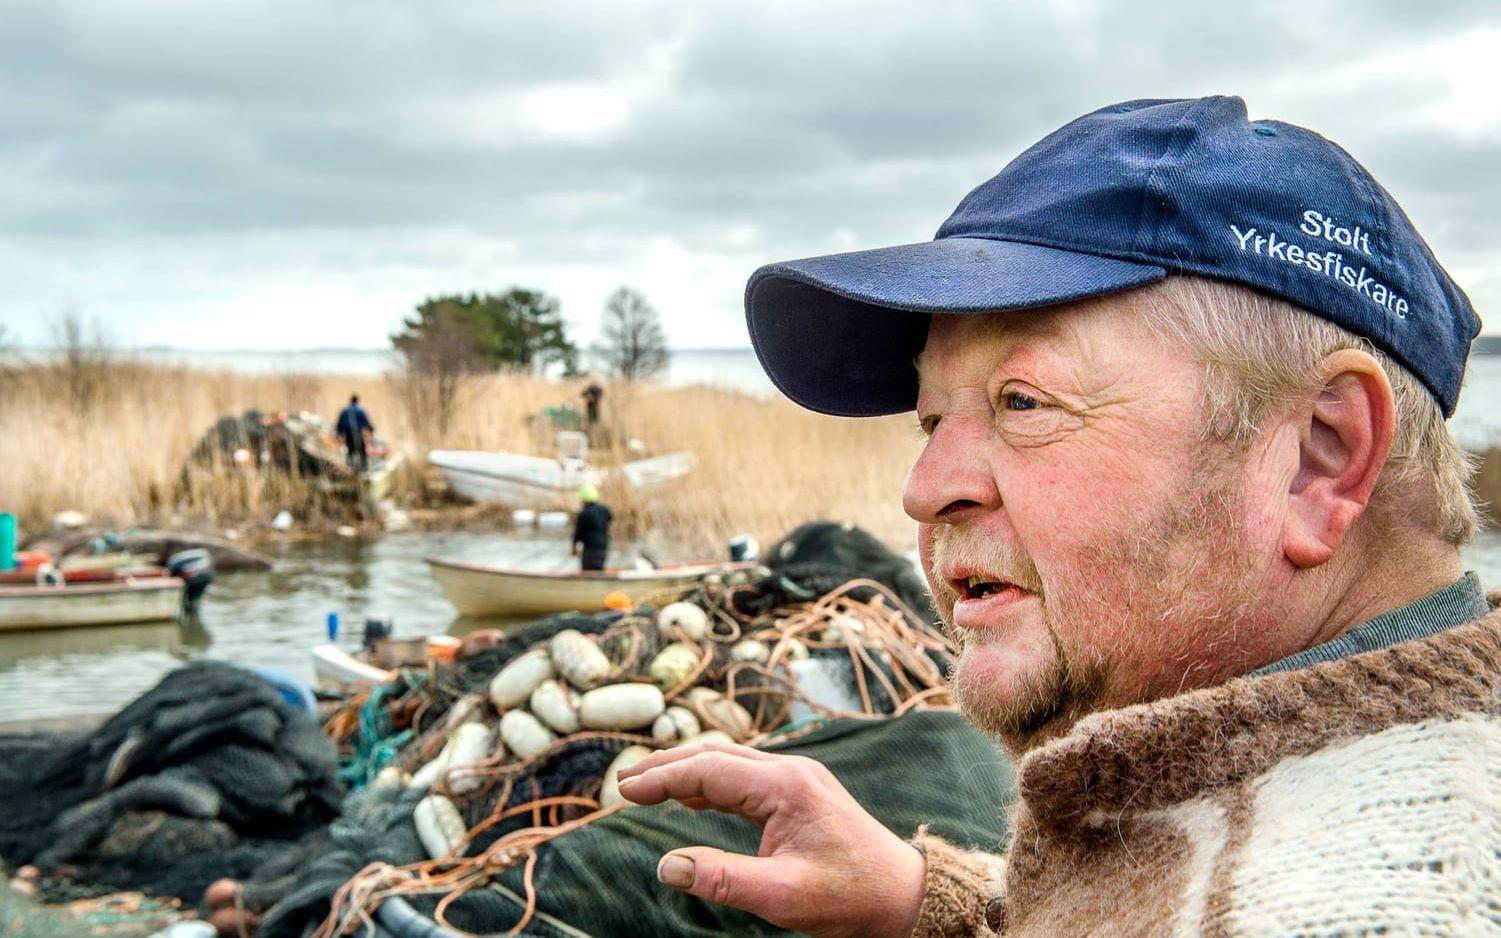 Konny Gustafsson är en av de sex yrkesfiskarna på Vänersnäs. Bild: Stefan Bennhage